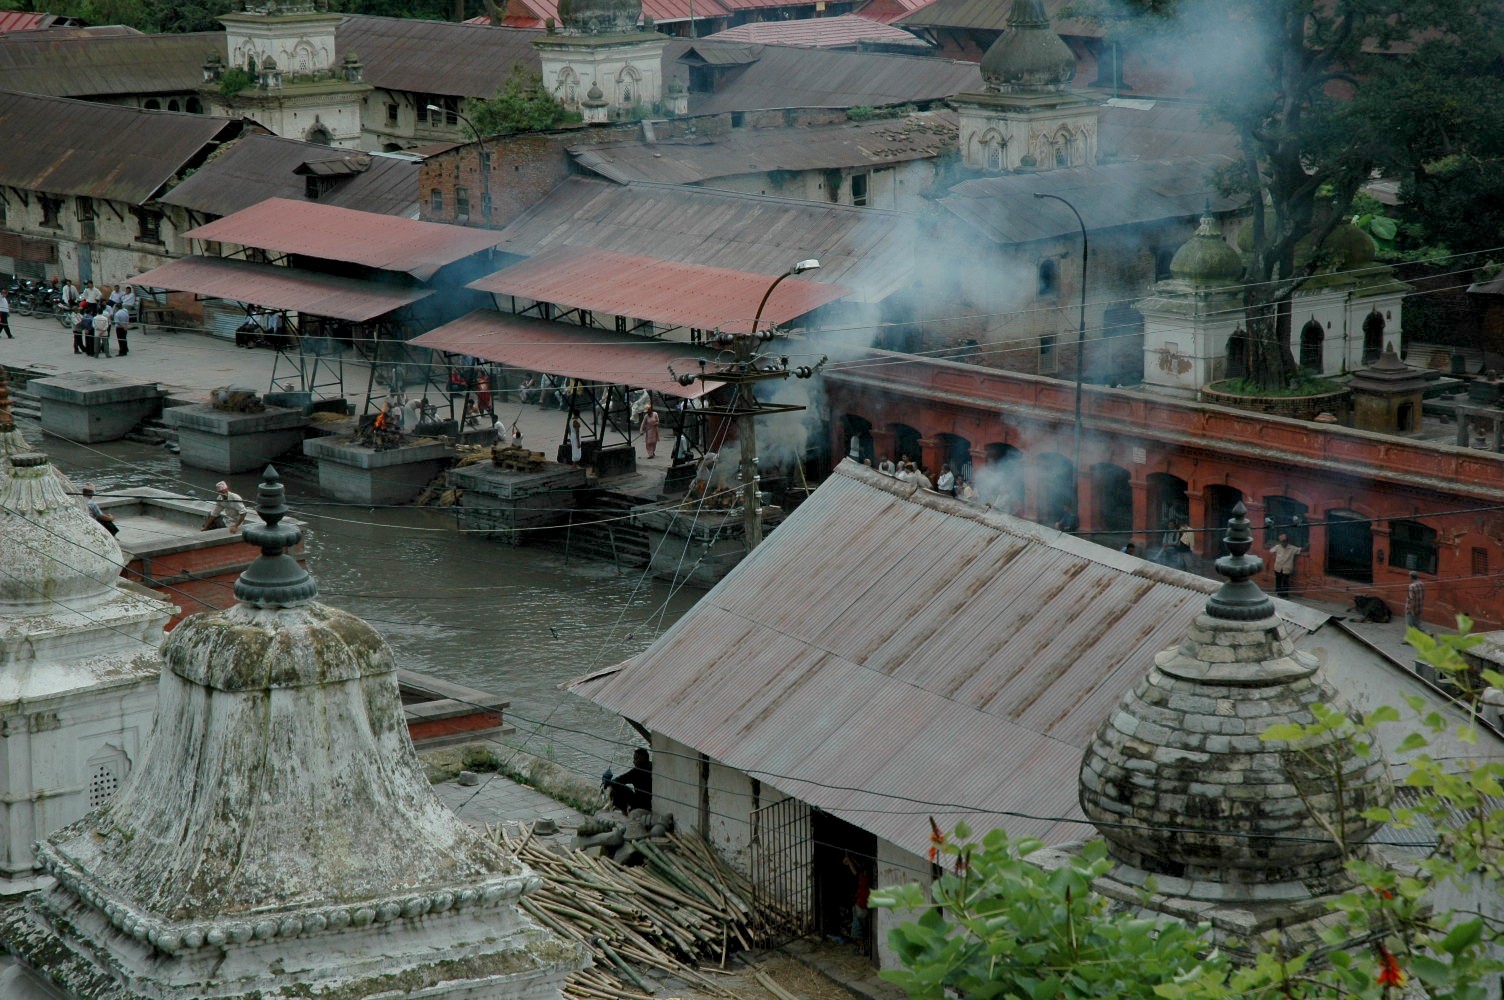 Pashupatinath - Katmandu